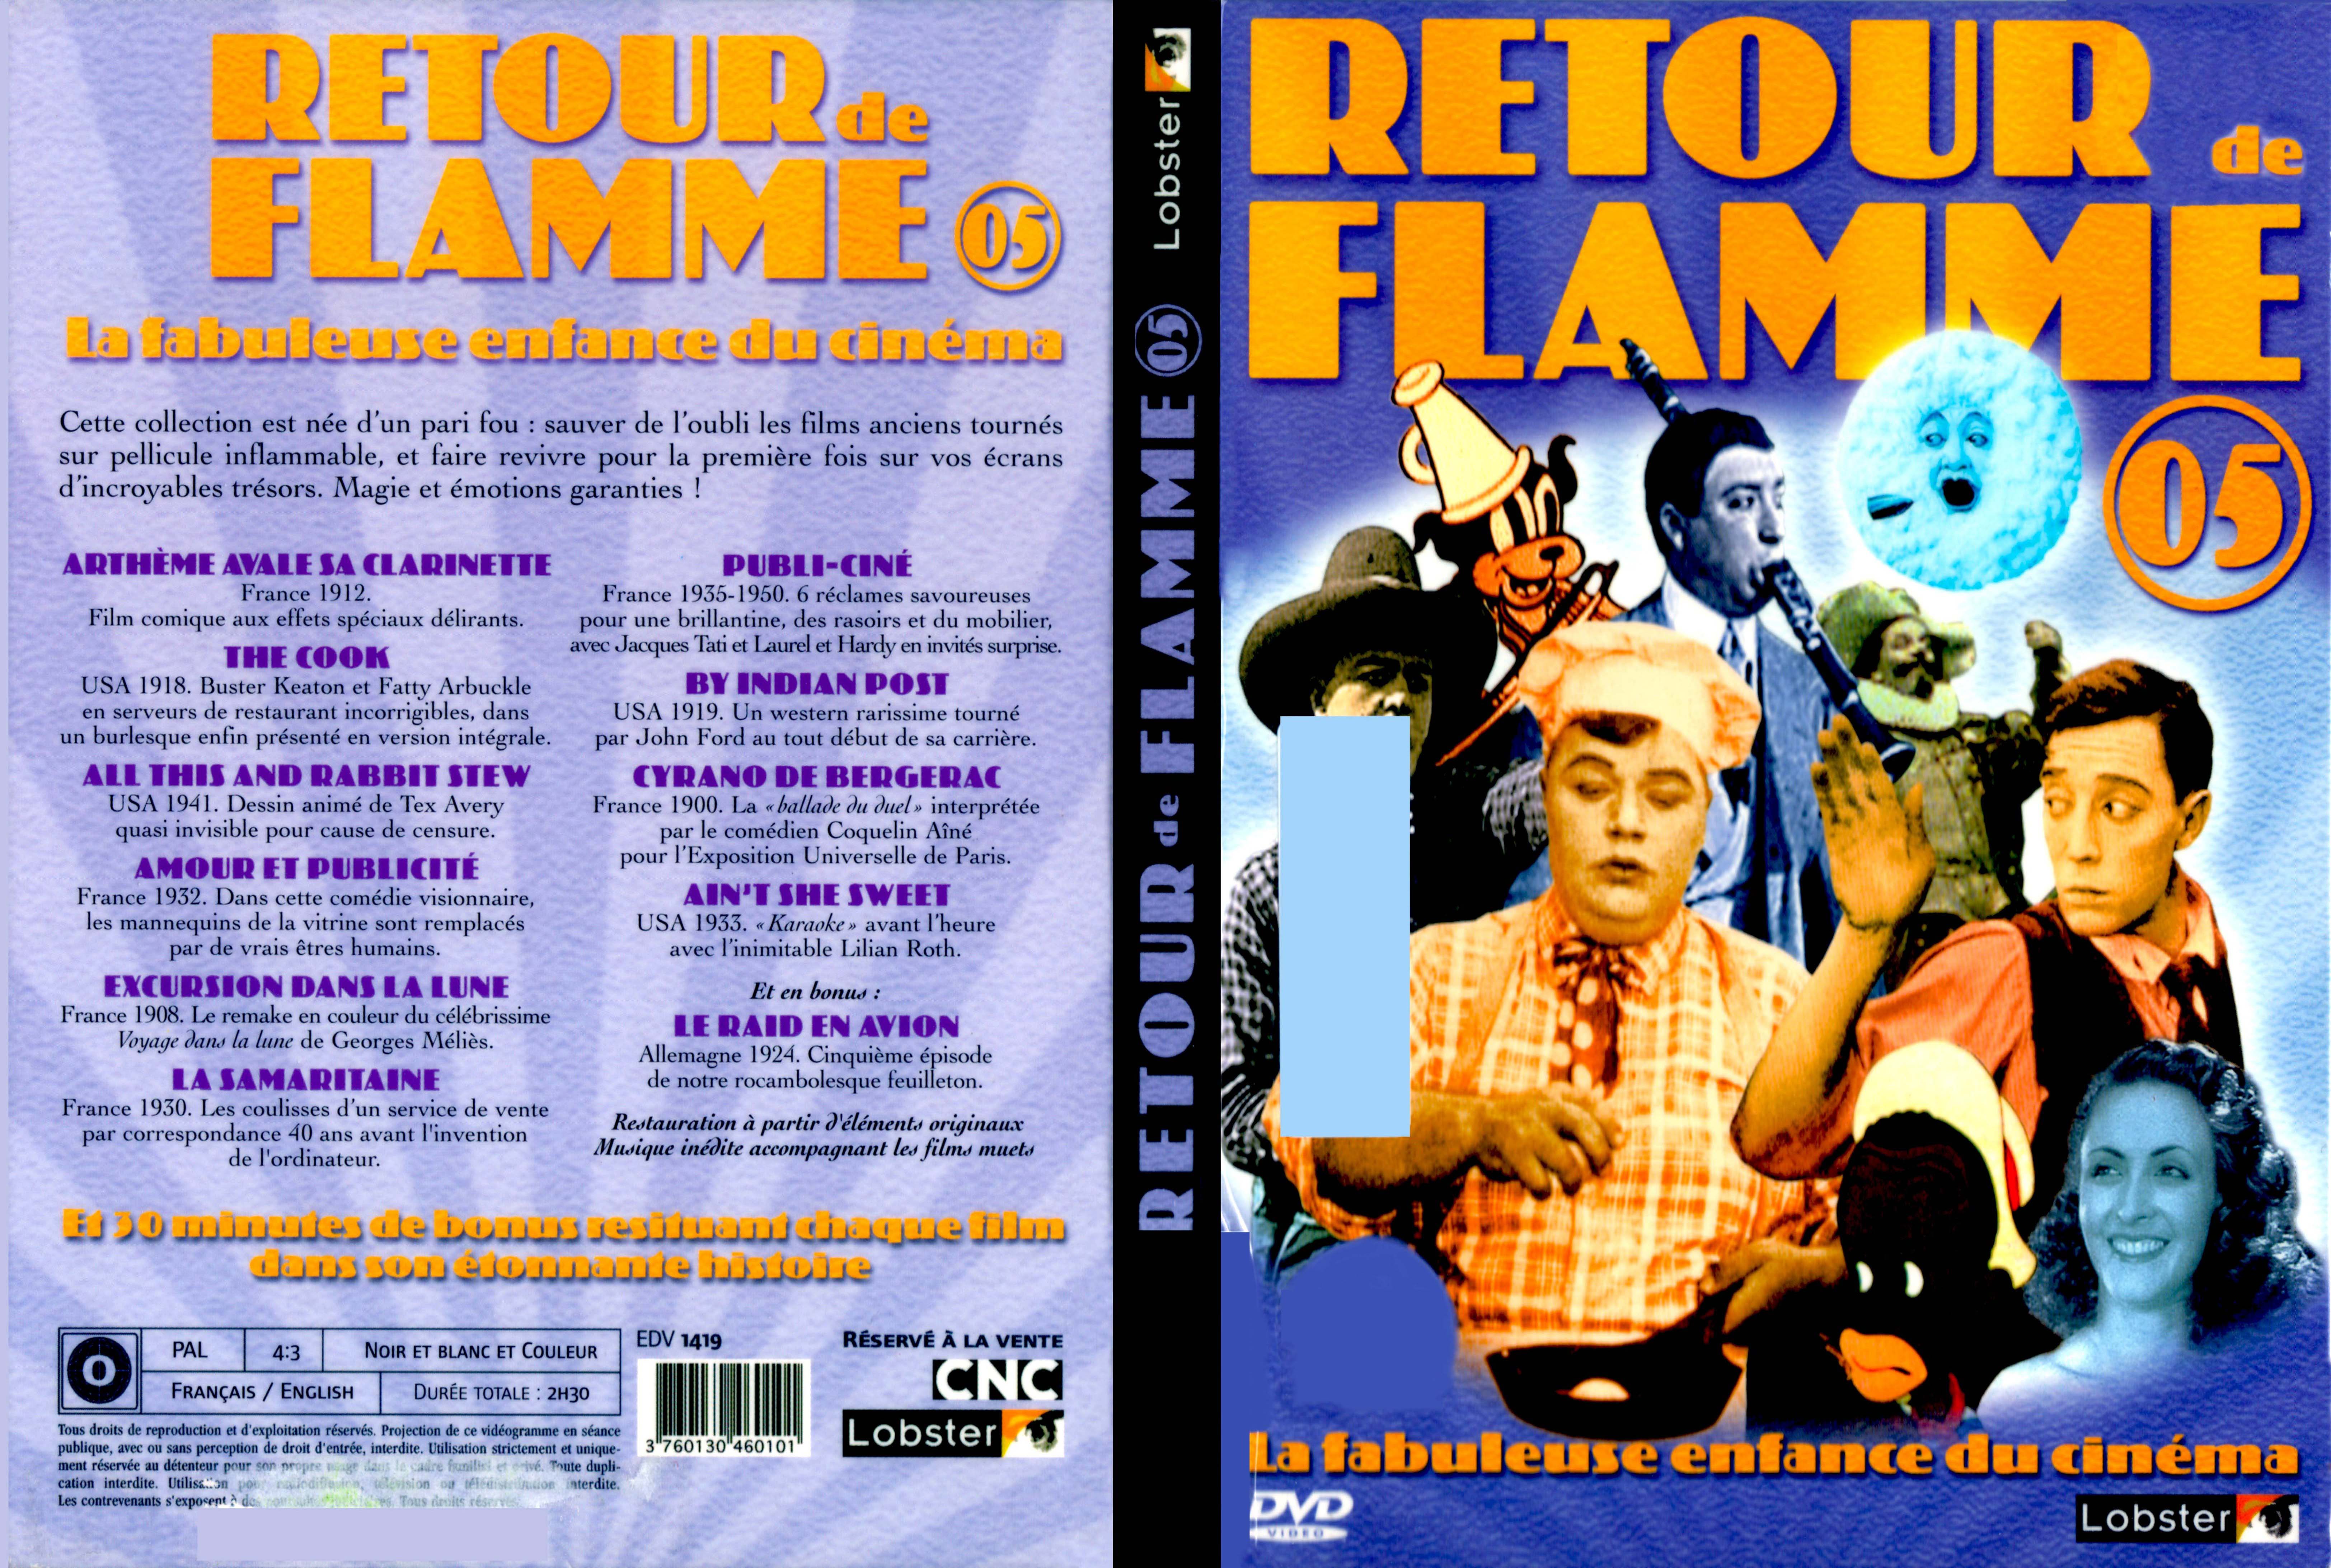 Jaquette DVD Retour de flammes 05